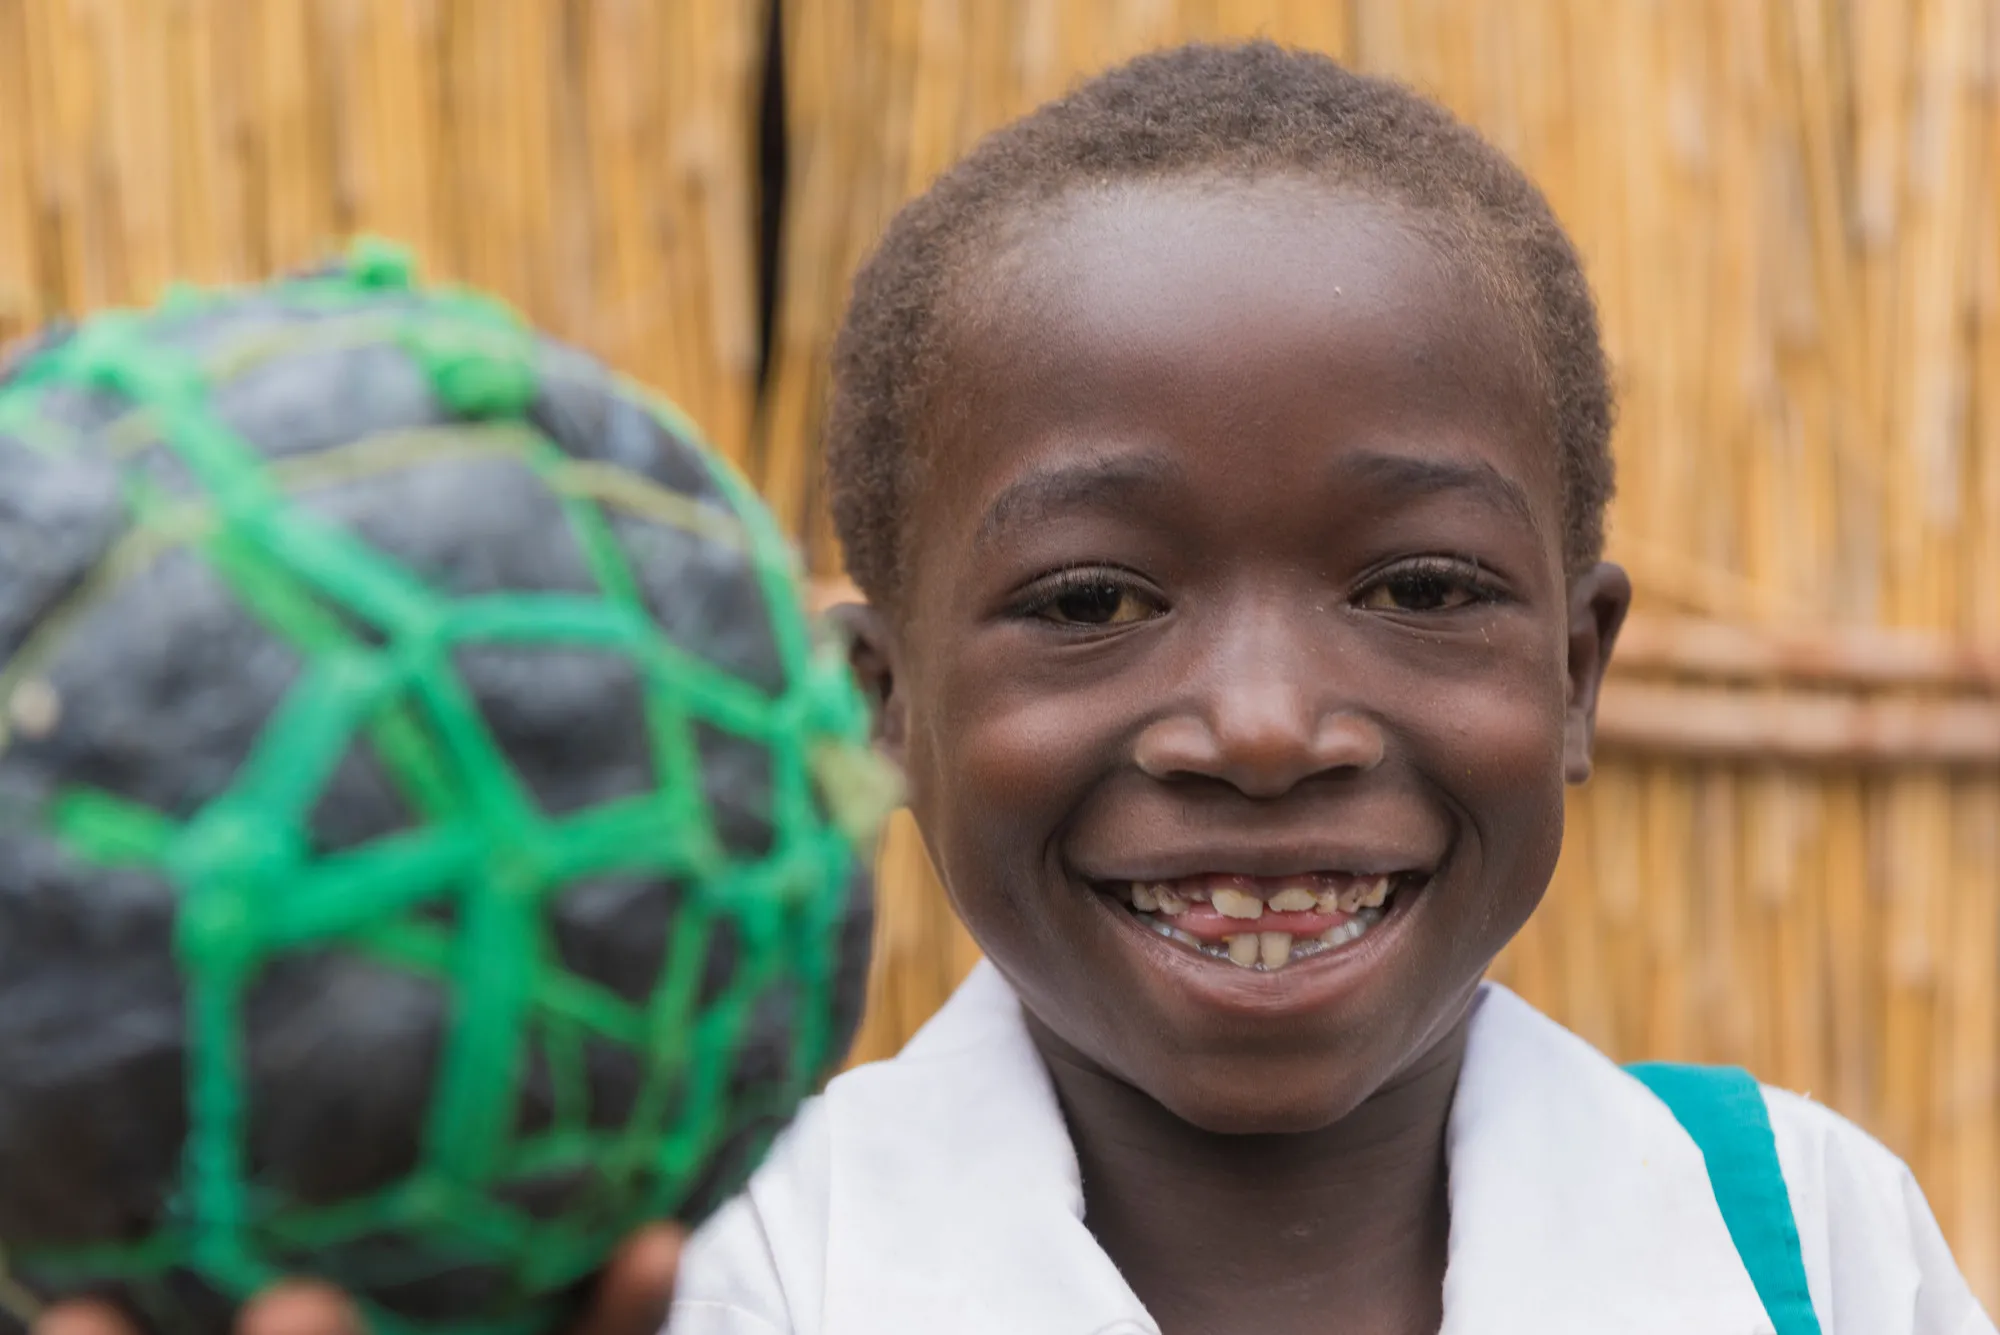 Una niña sonríe mientras sostiene un balón de fútbol improvisado hecho con cuerdas y bolsas de plástico.